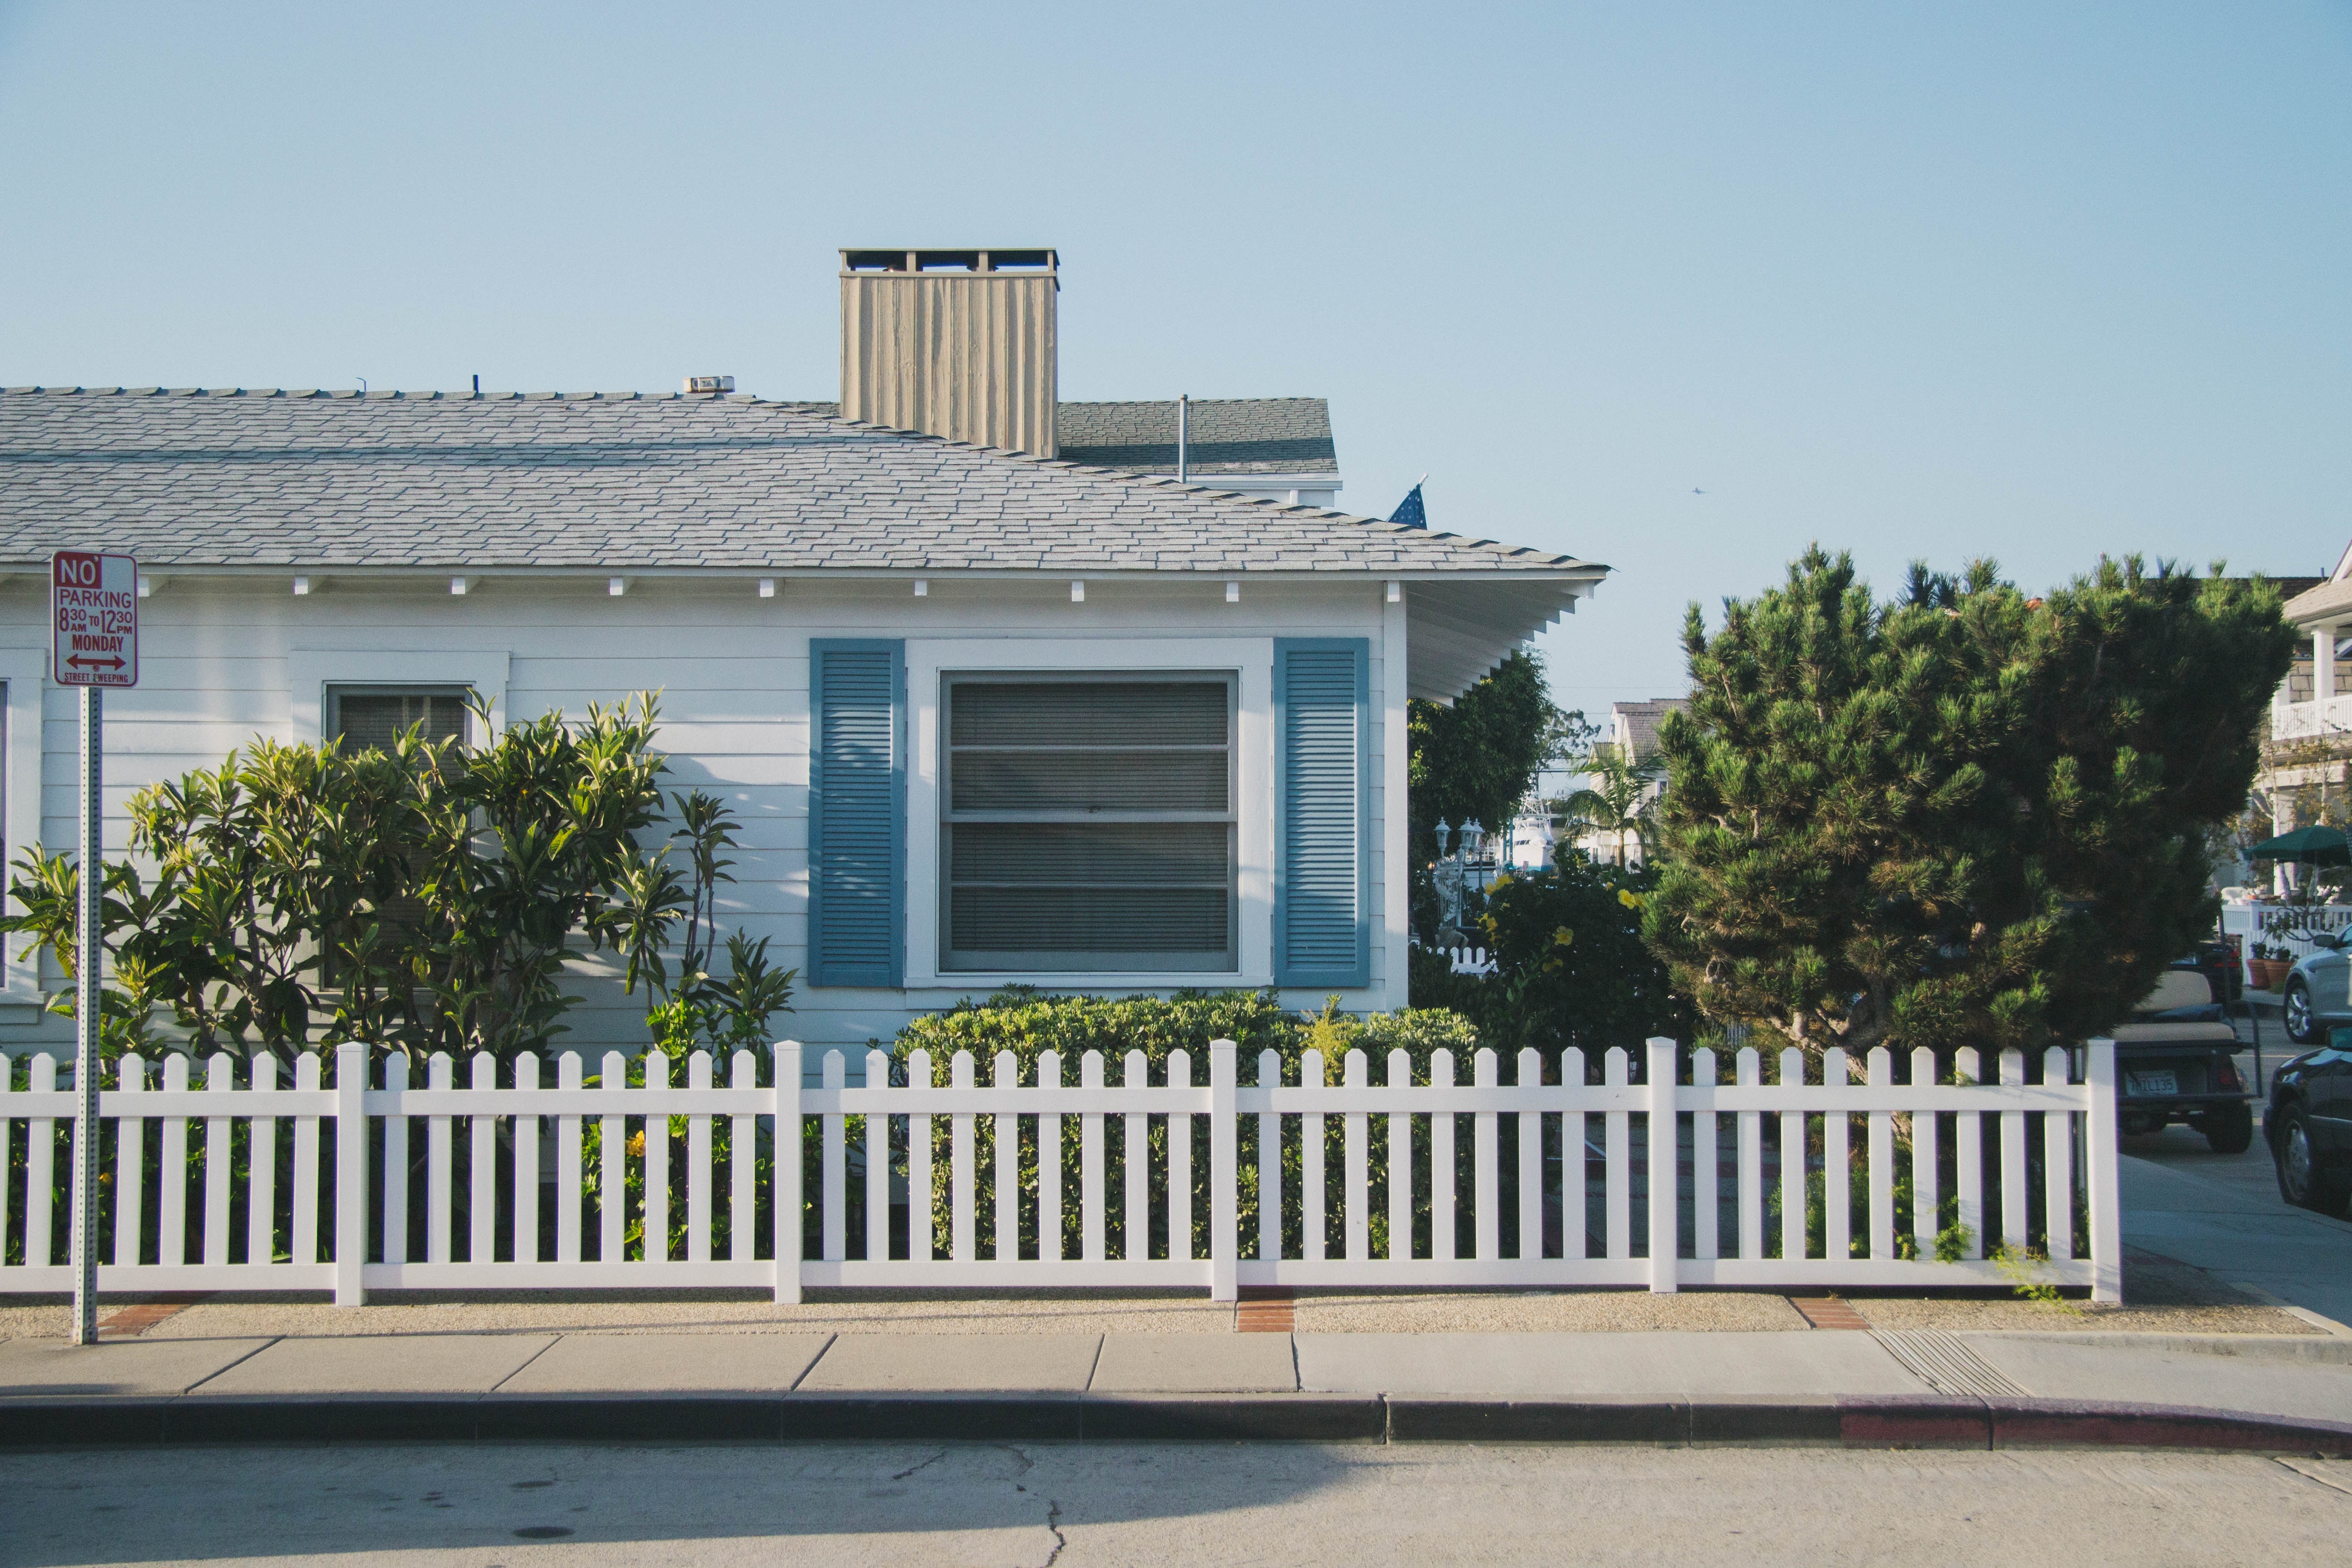 Maison de plein-pied américaine avec une clôture en barrières blanches